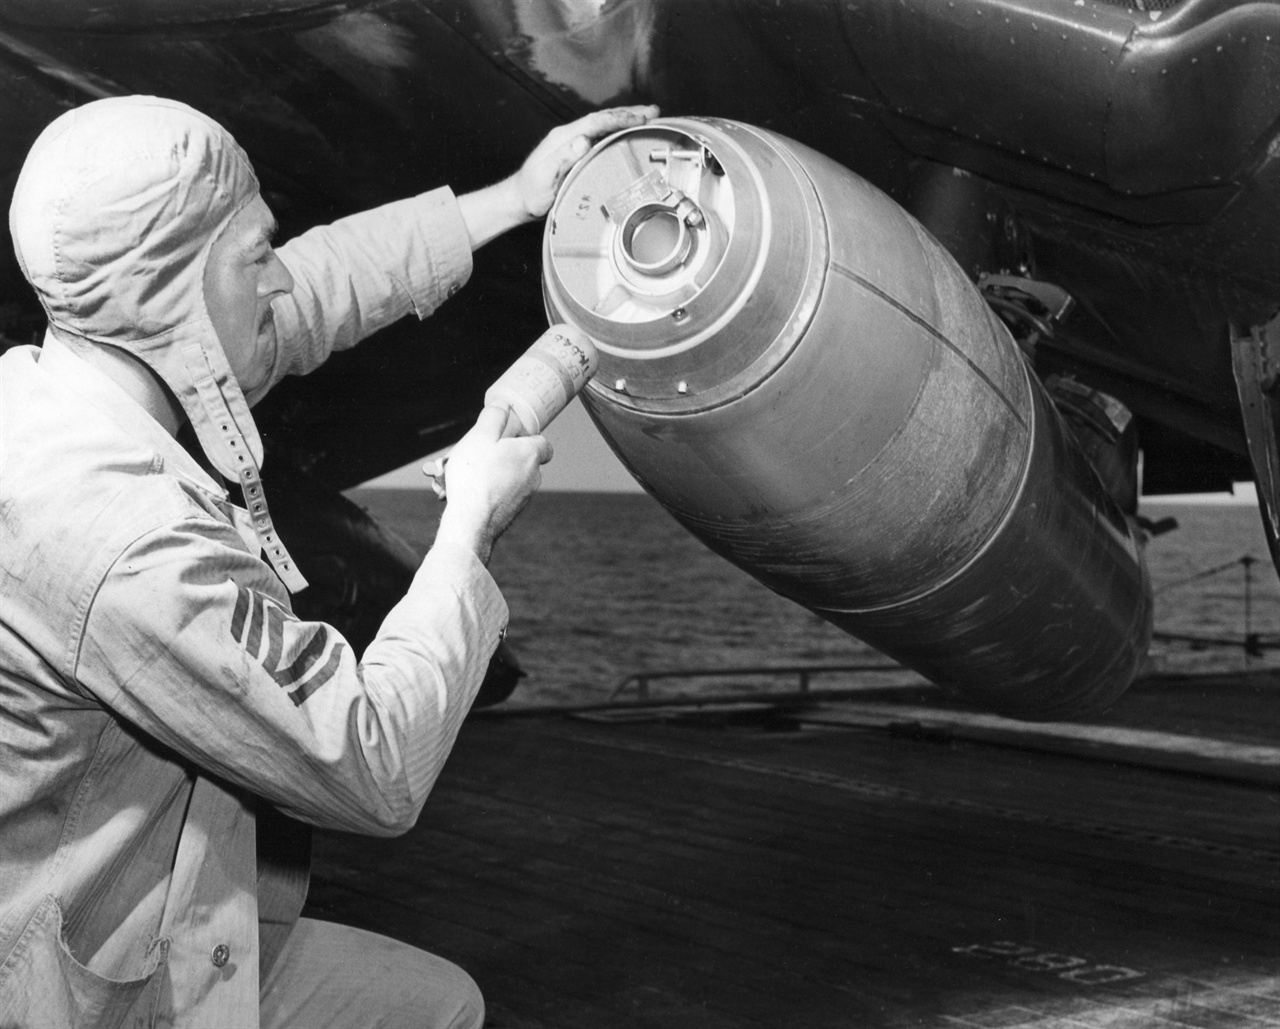 1951. 10. 28. 미 해군 하사관이 새로 개발한 네이팜탄을 전투기에 장전하고 있다.